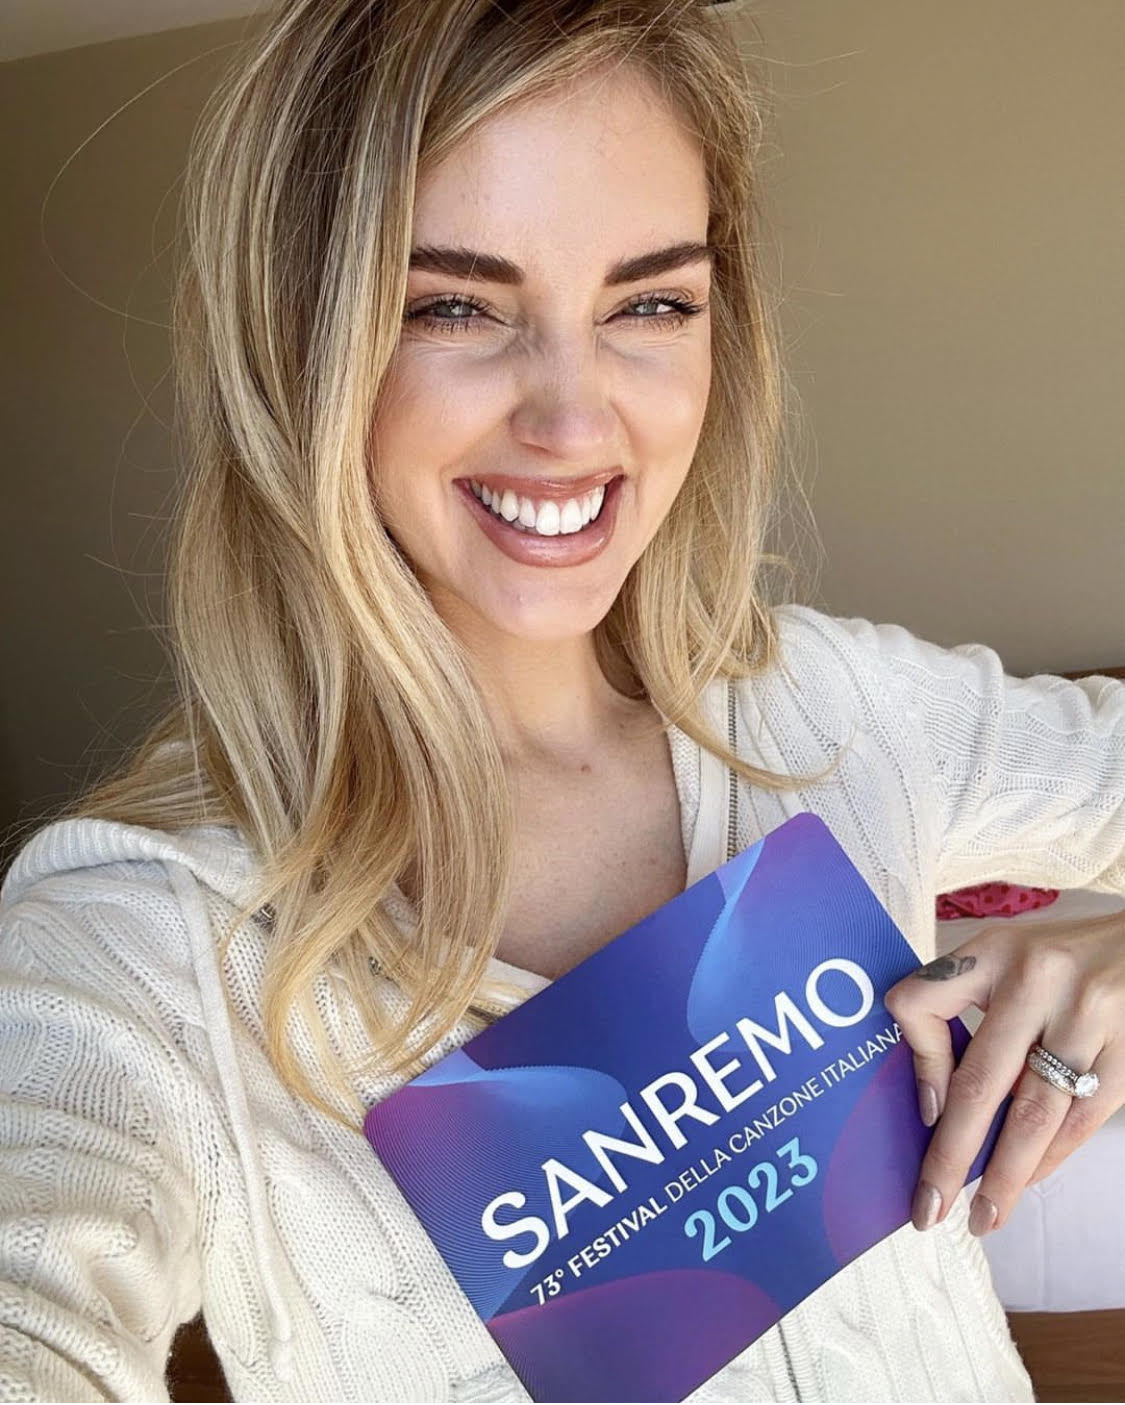 Sanremo 2023, le anticipazioni delle prime due serate. Chiara Ferragni, co-conduttrice della prima e ultima serata, ha postato sui social: "Molto emozionata, onorata e agitata"